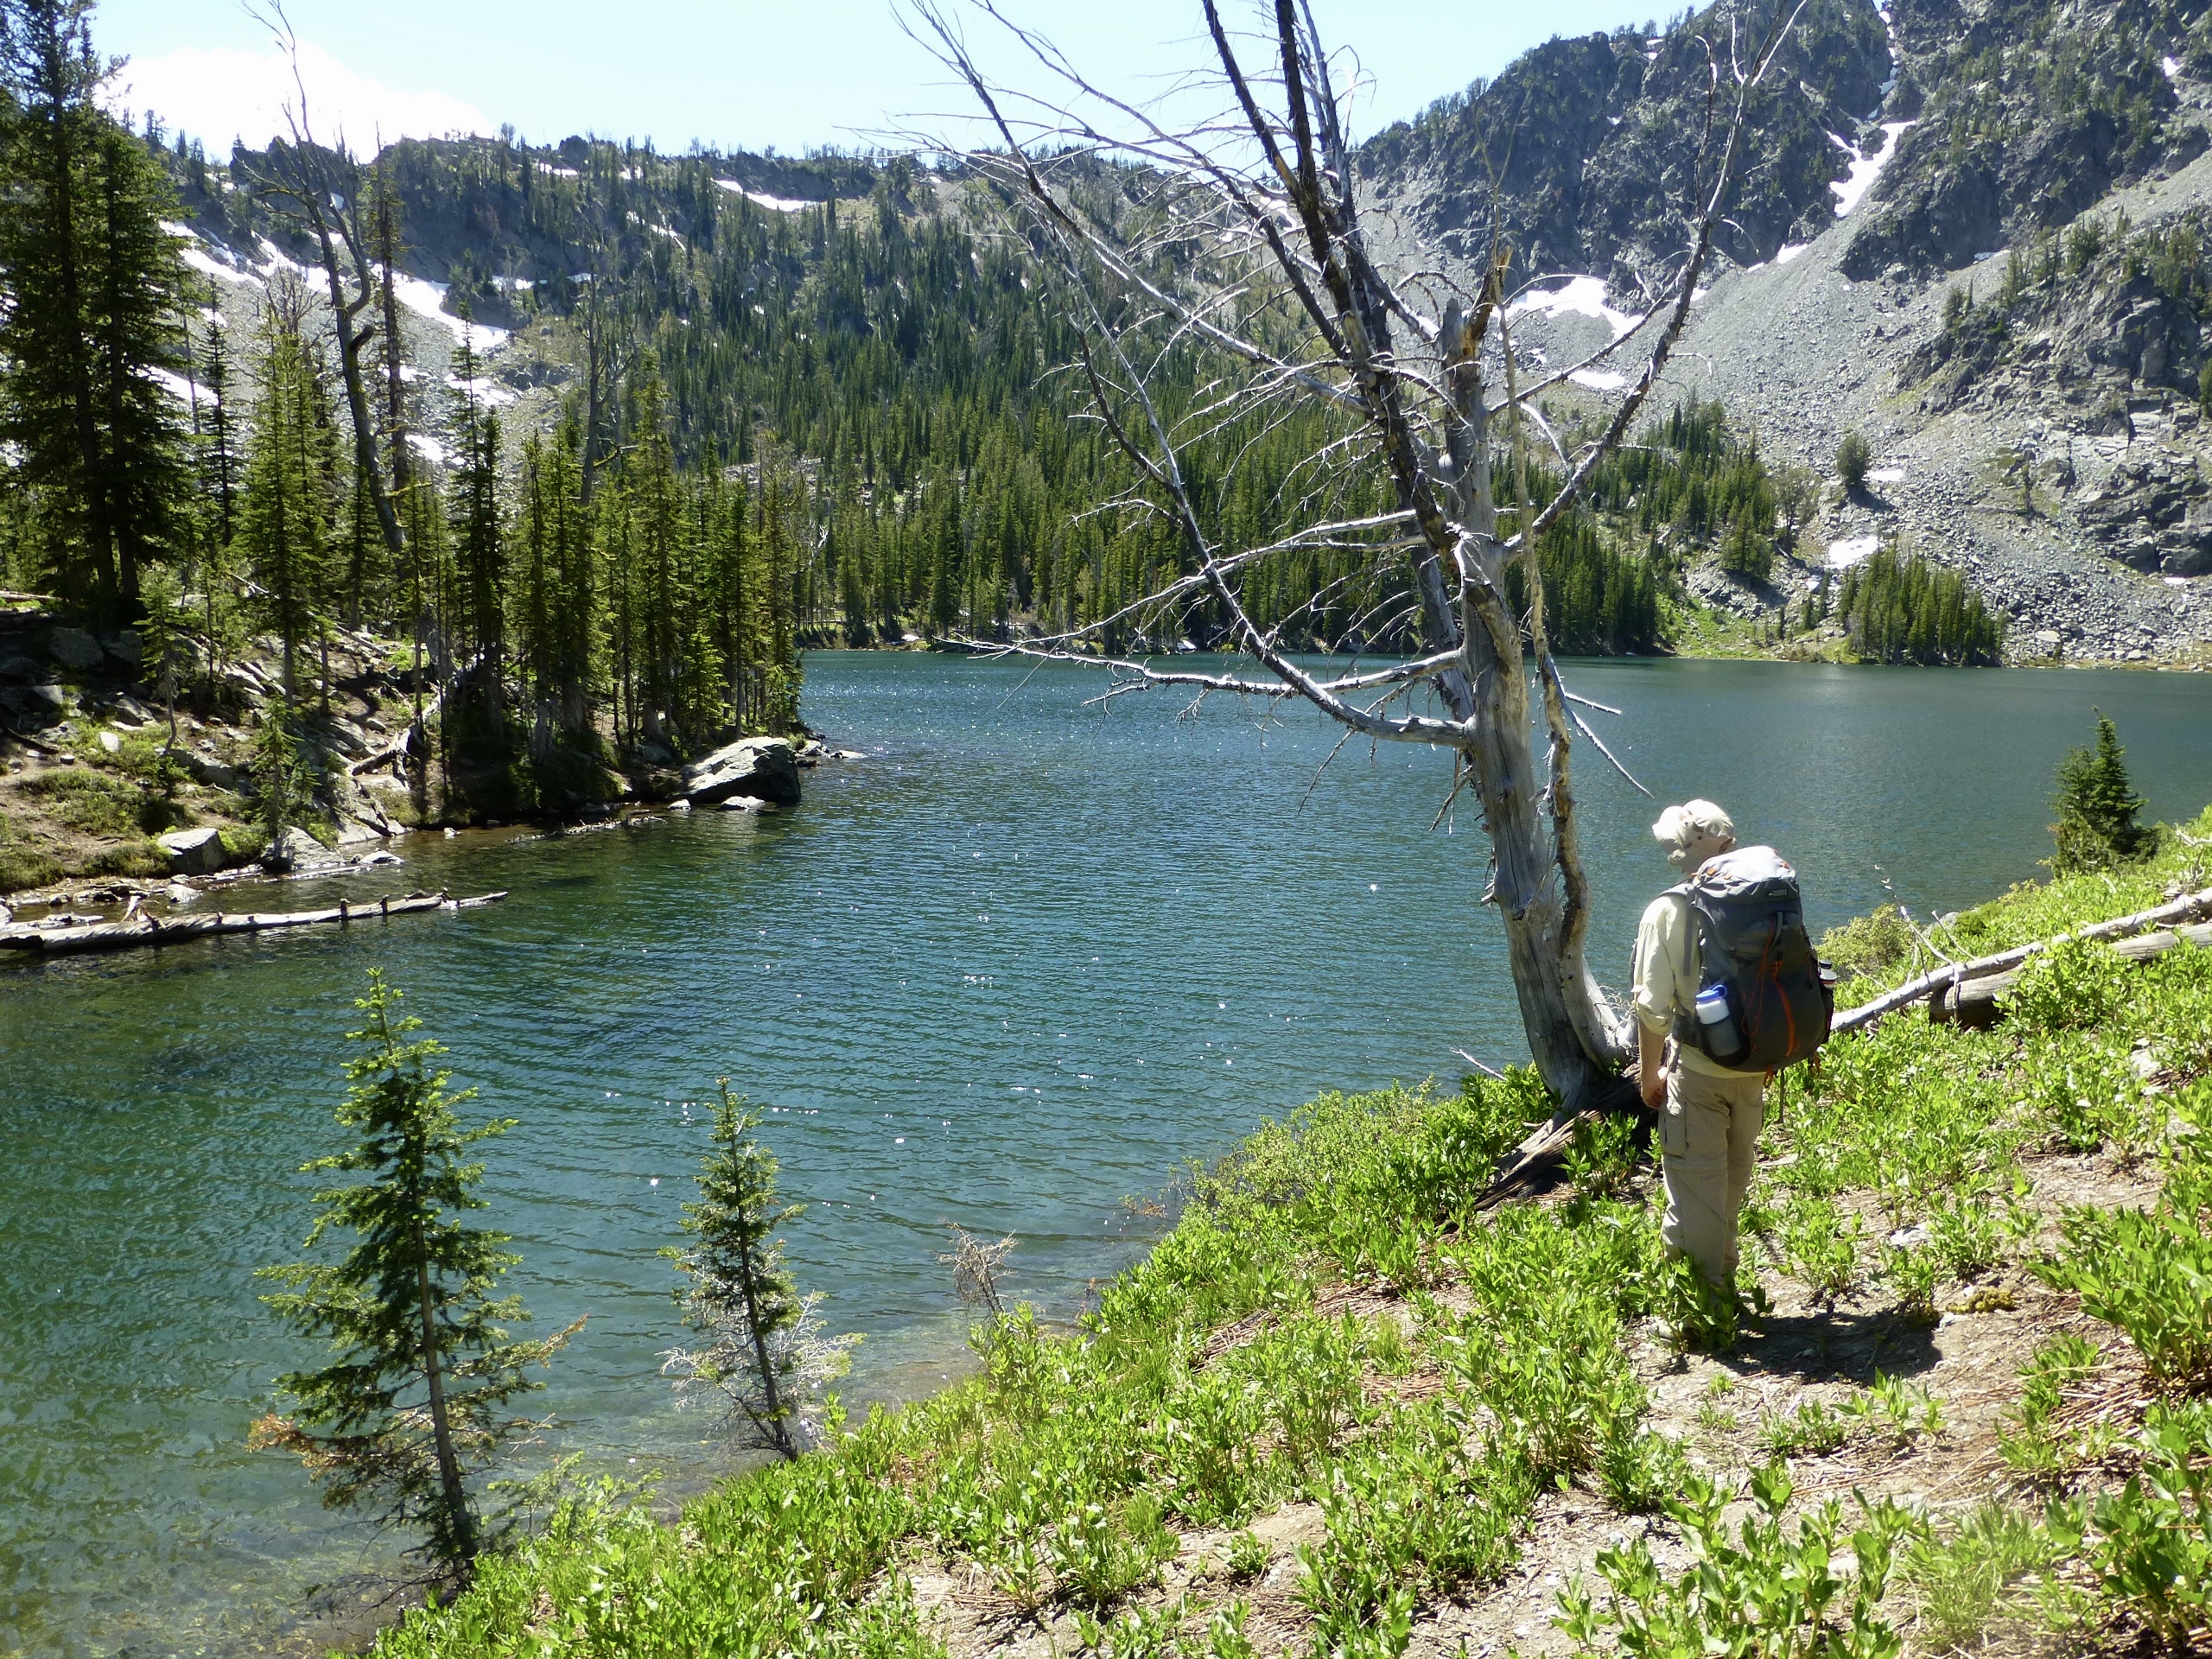 Explore scenic fishing spots at Idaho's mountain lakes Idaho Fish and